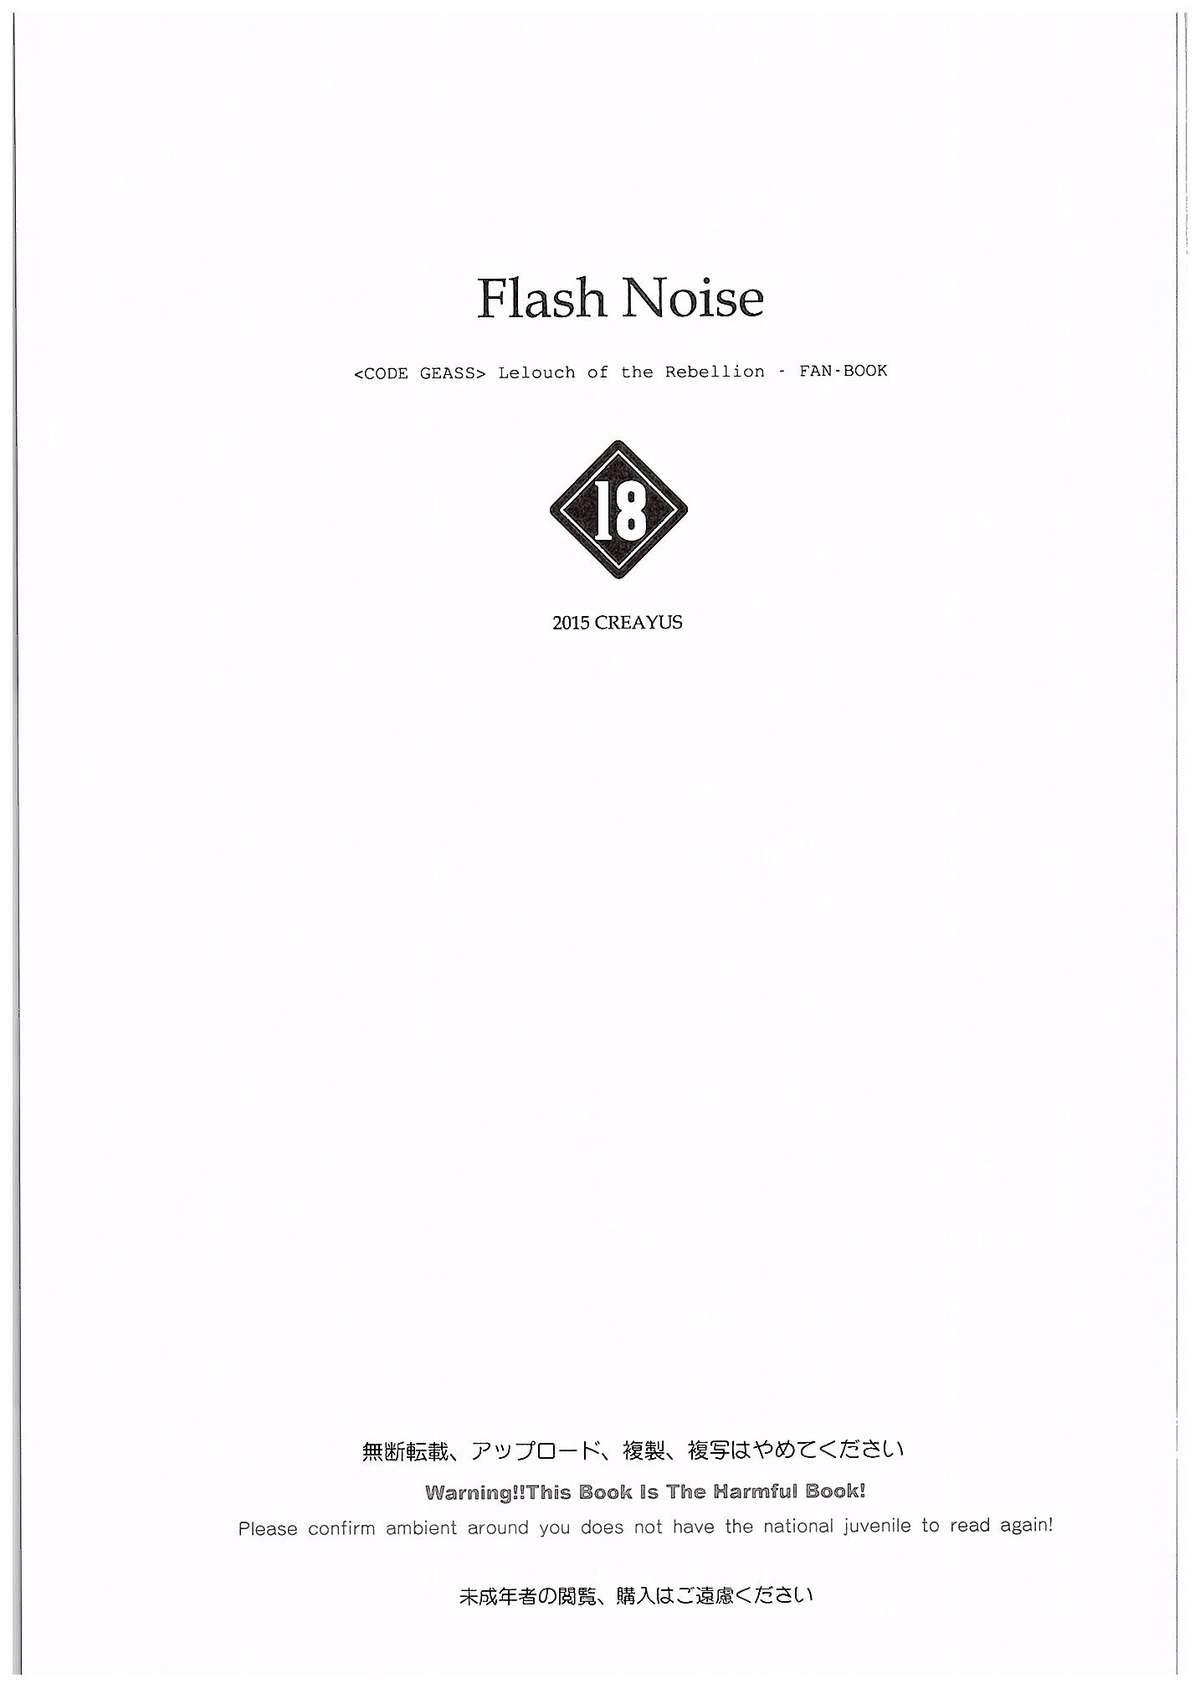 FLASH NOISE 1